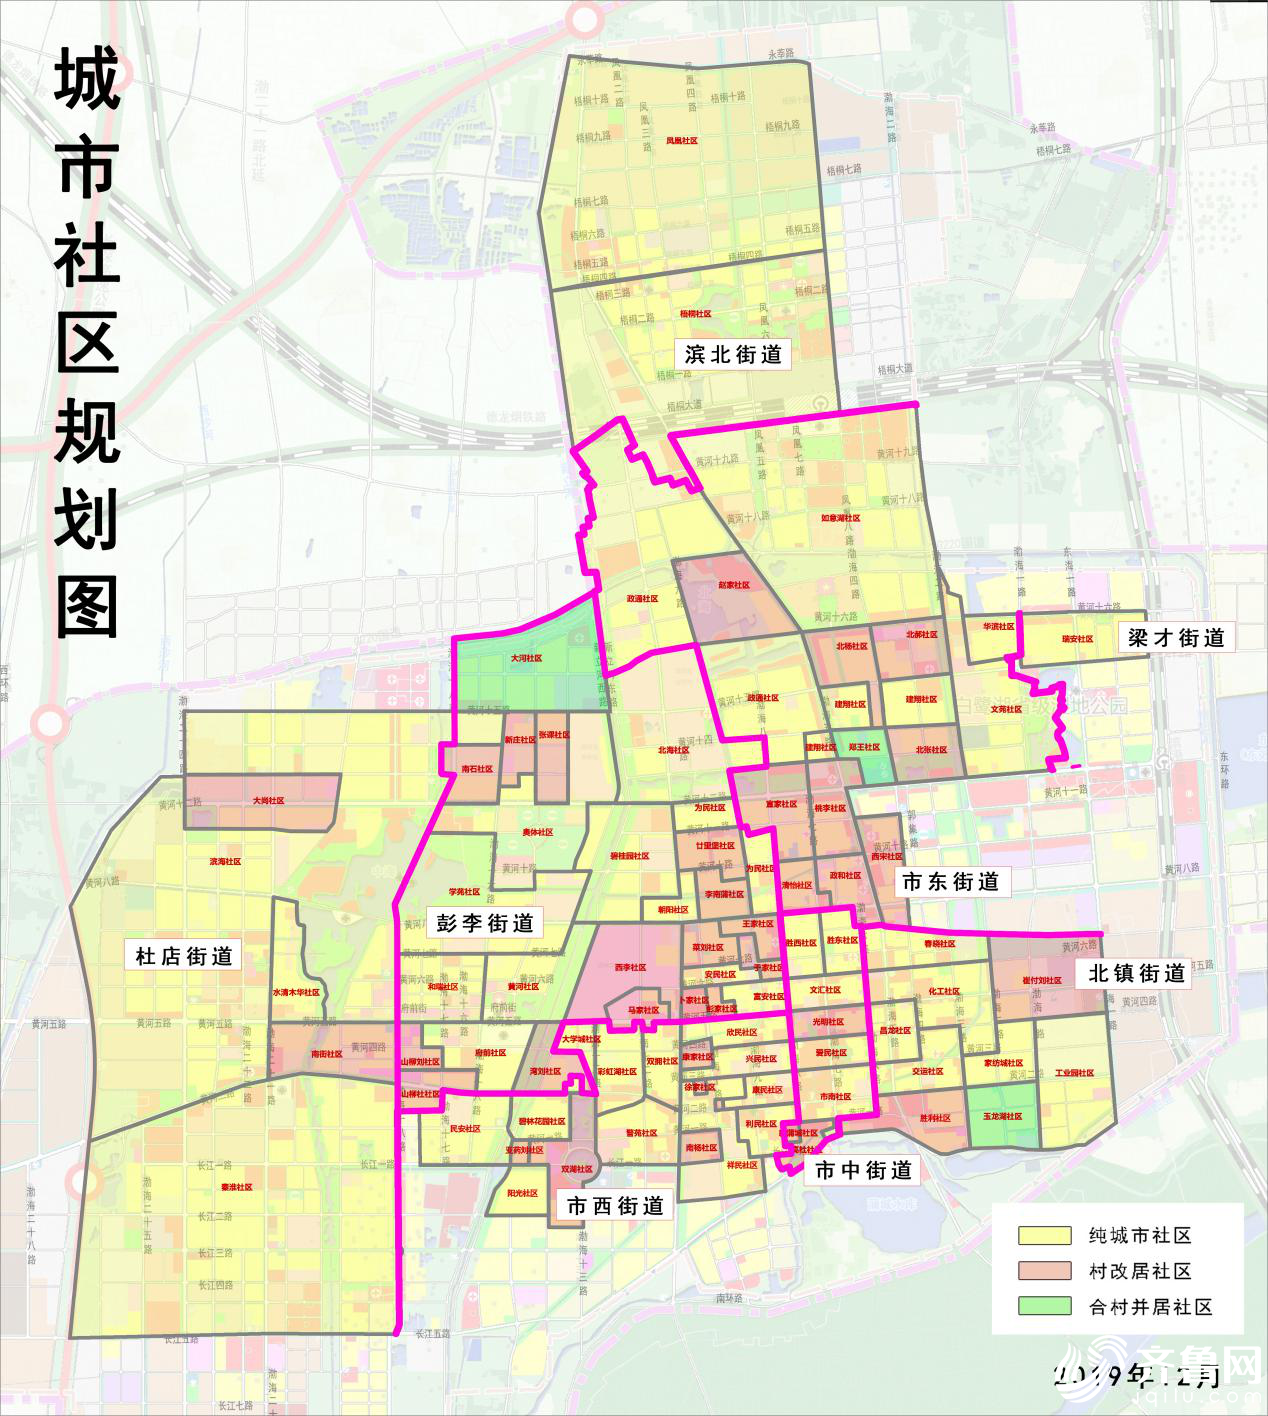 滨城区调整后的城市社区规划图